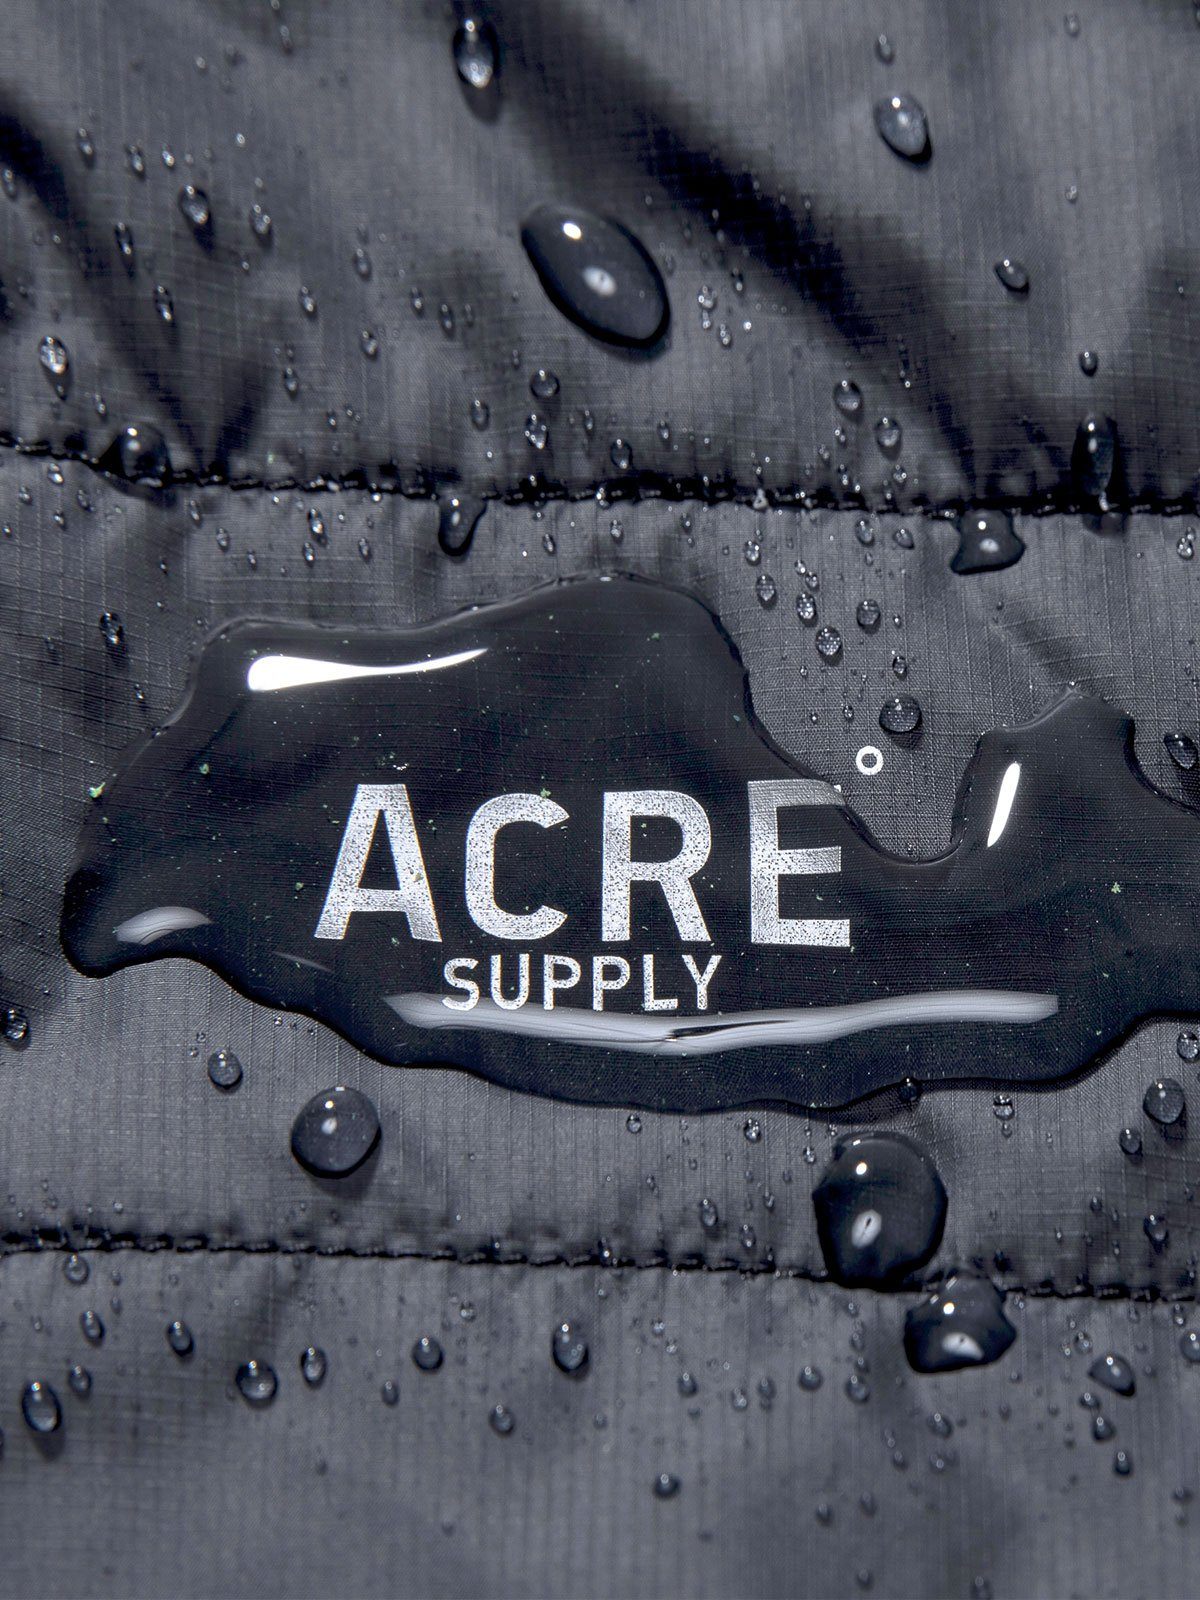 Acre Series Vest by Mission Workshop - Säänkestävät laukut ja tekniset vaatteet - San Francisco & Los Angeles - Rakennettu kestämään - ikuinen takuu